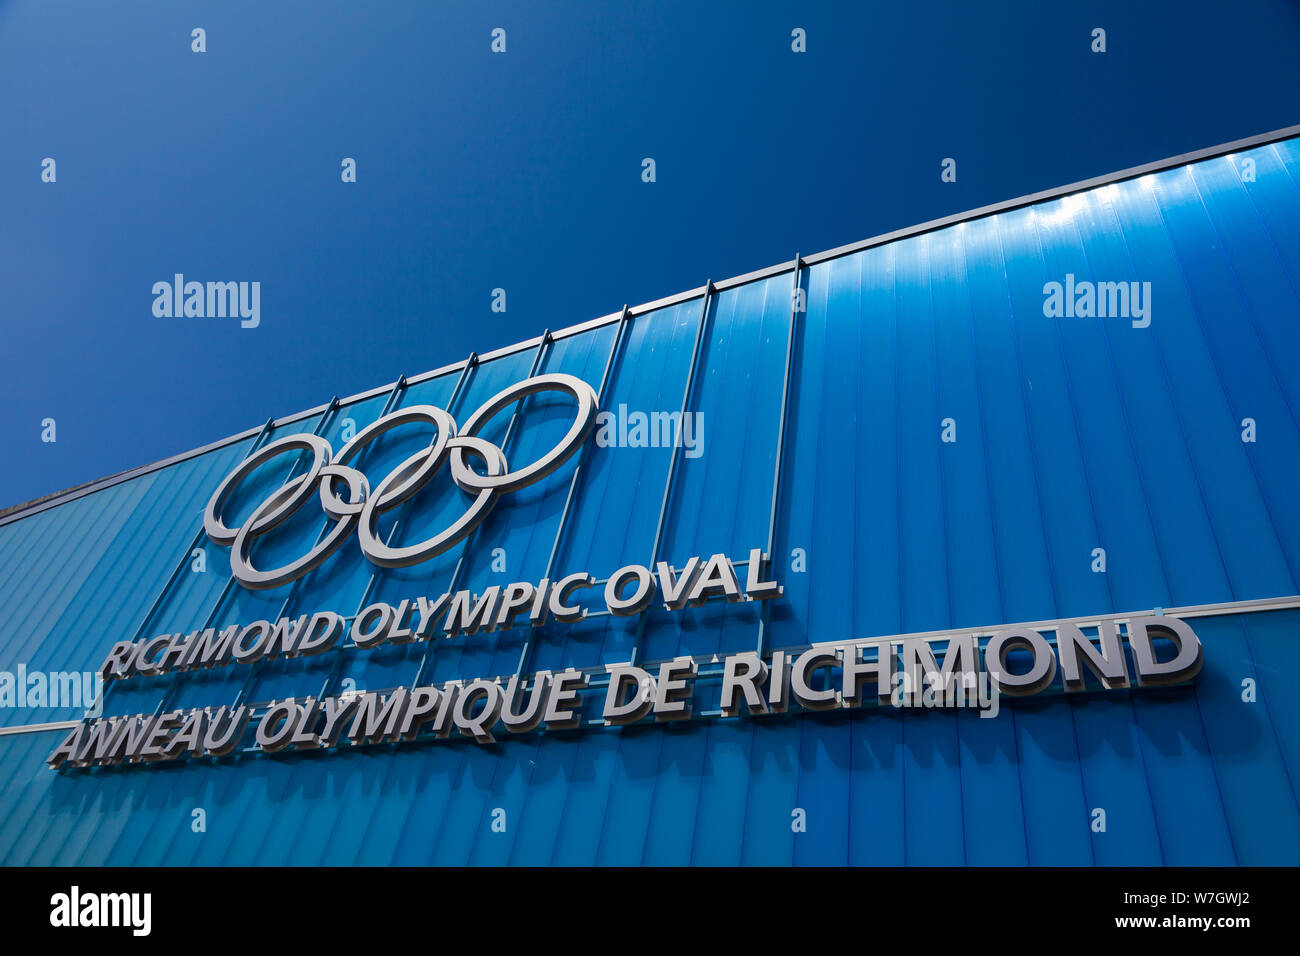 Caractéristiques architecturales de l'anneau olympique de Richmond en Colombie-Britannique, Canada Banque D'Images